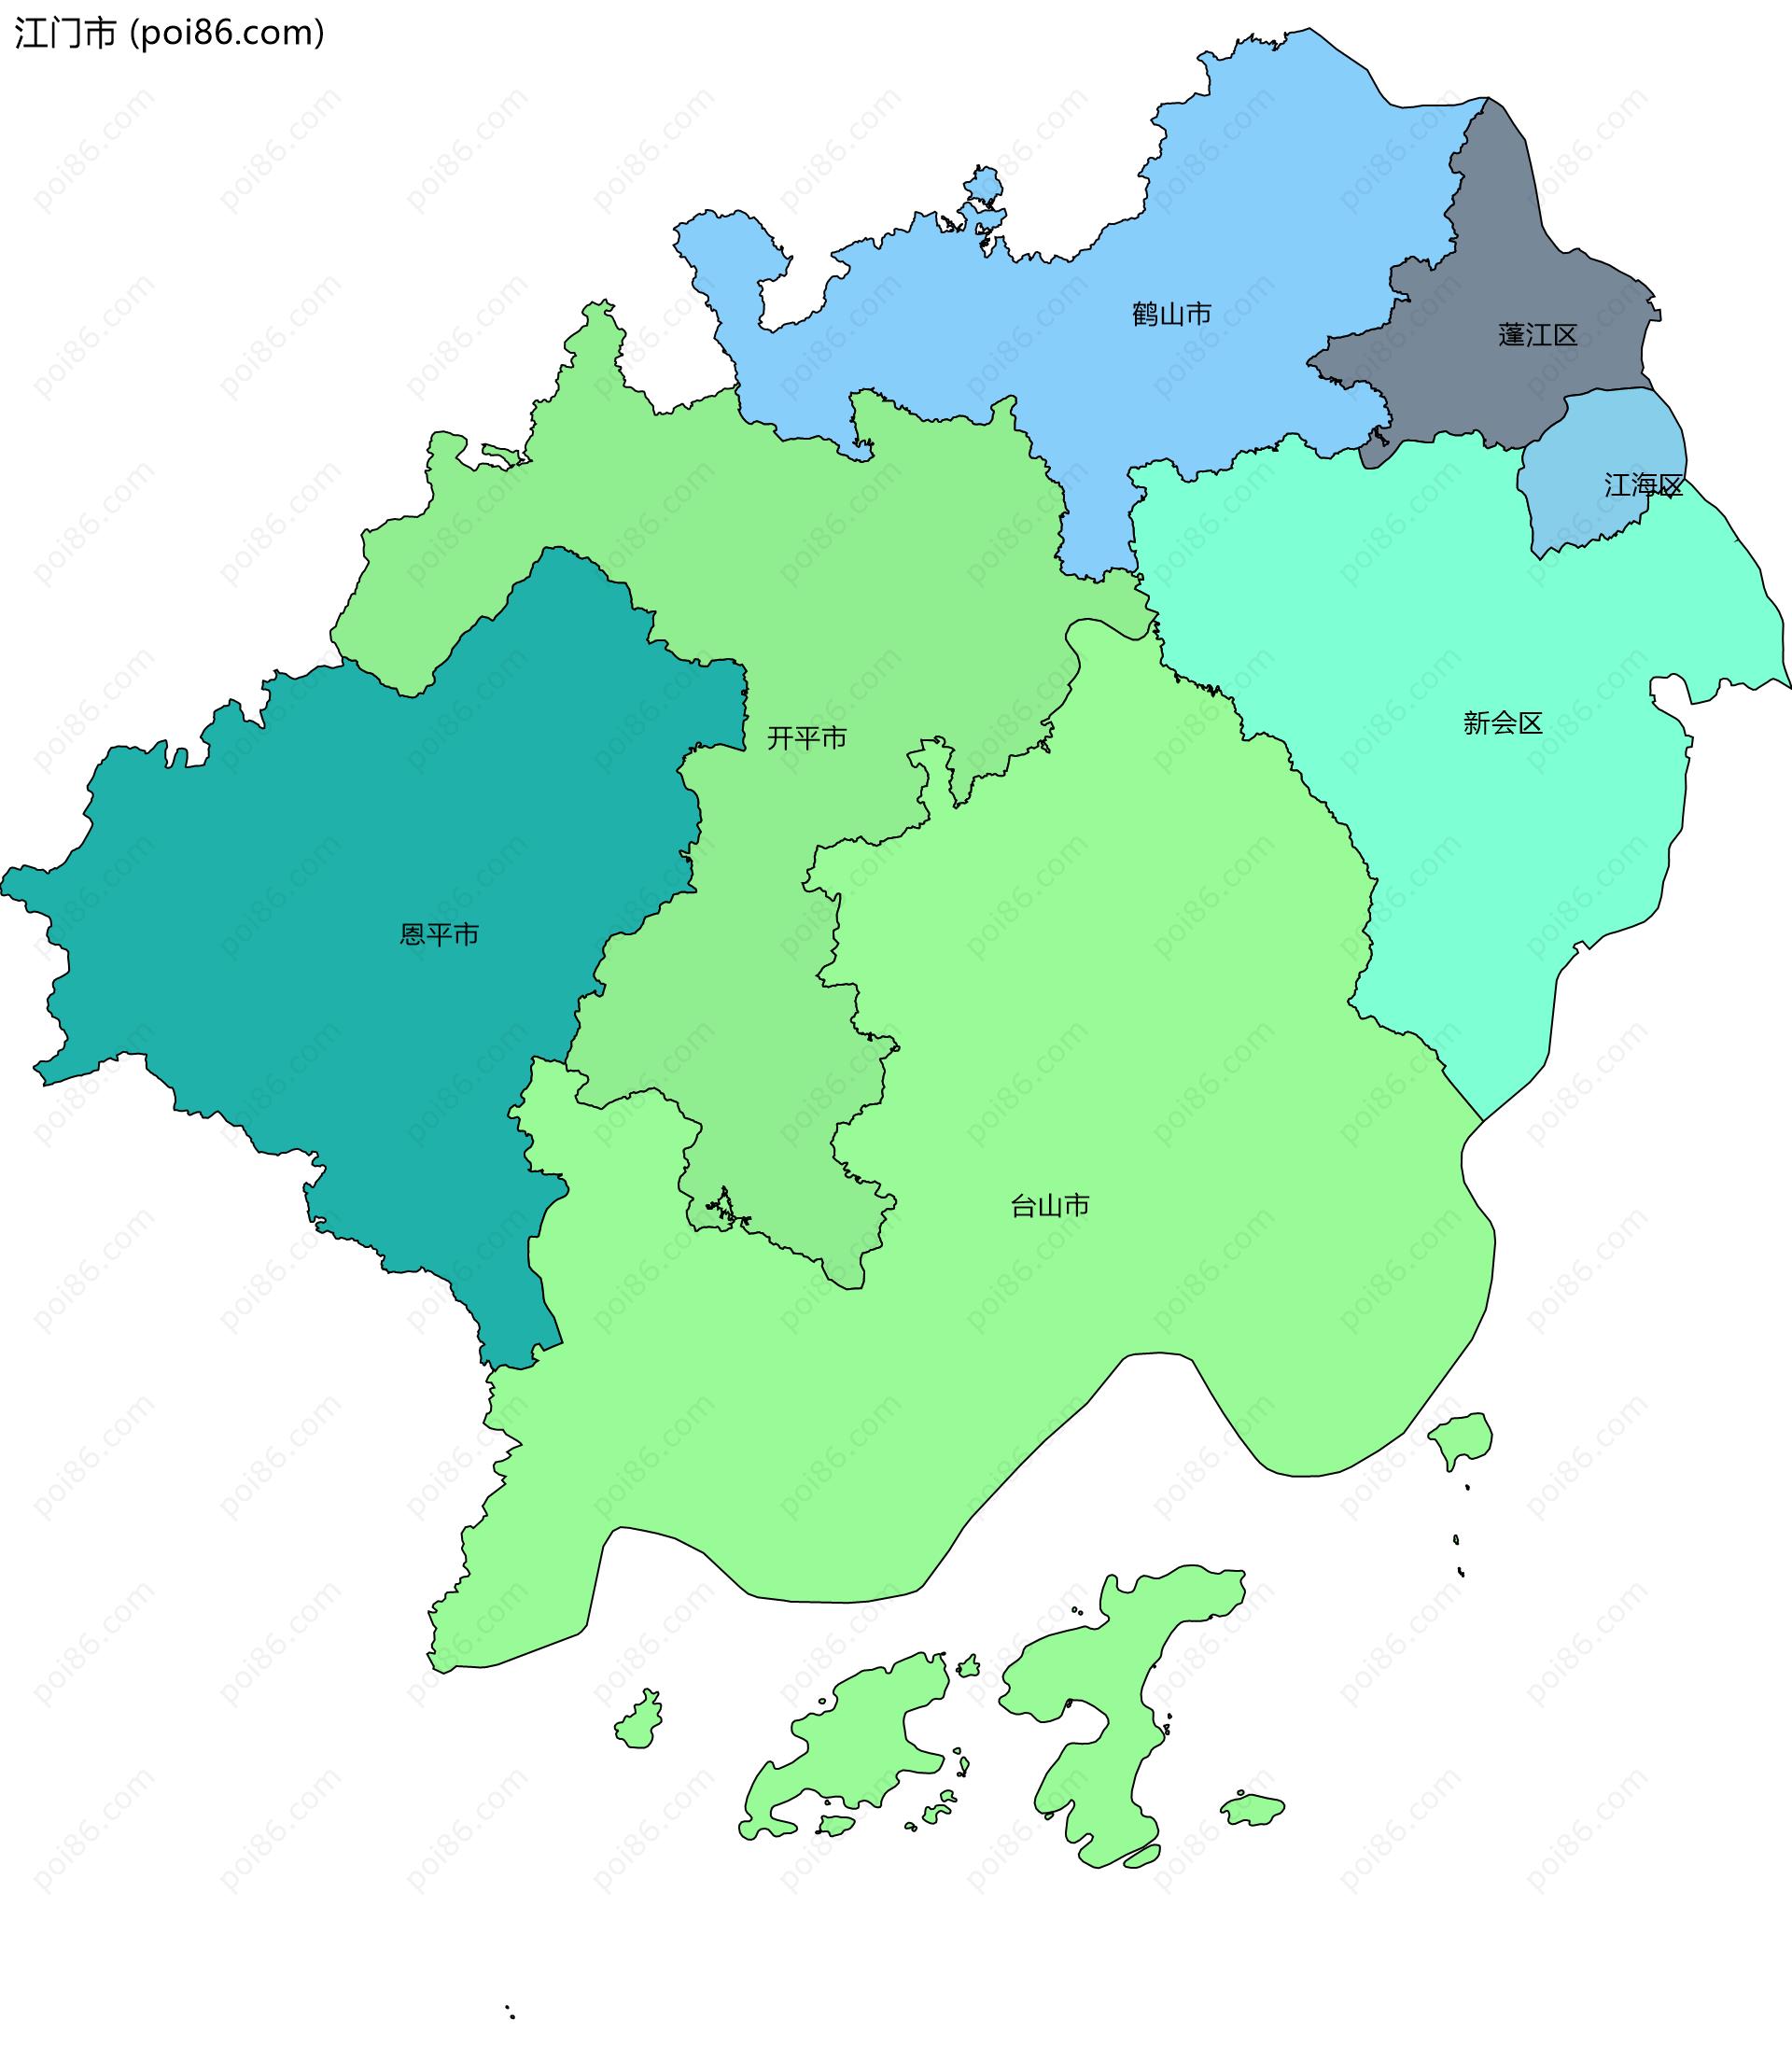 江门市边界地图